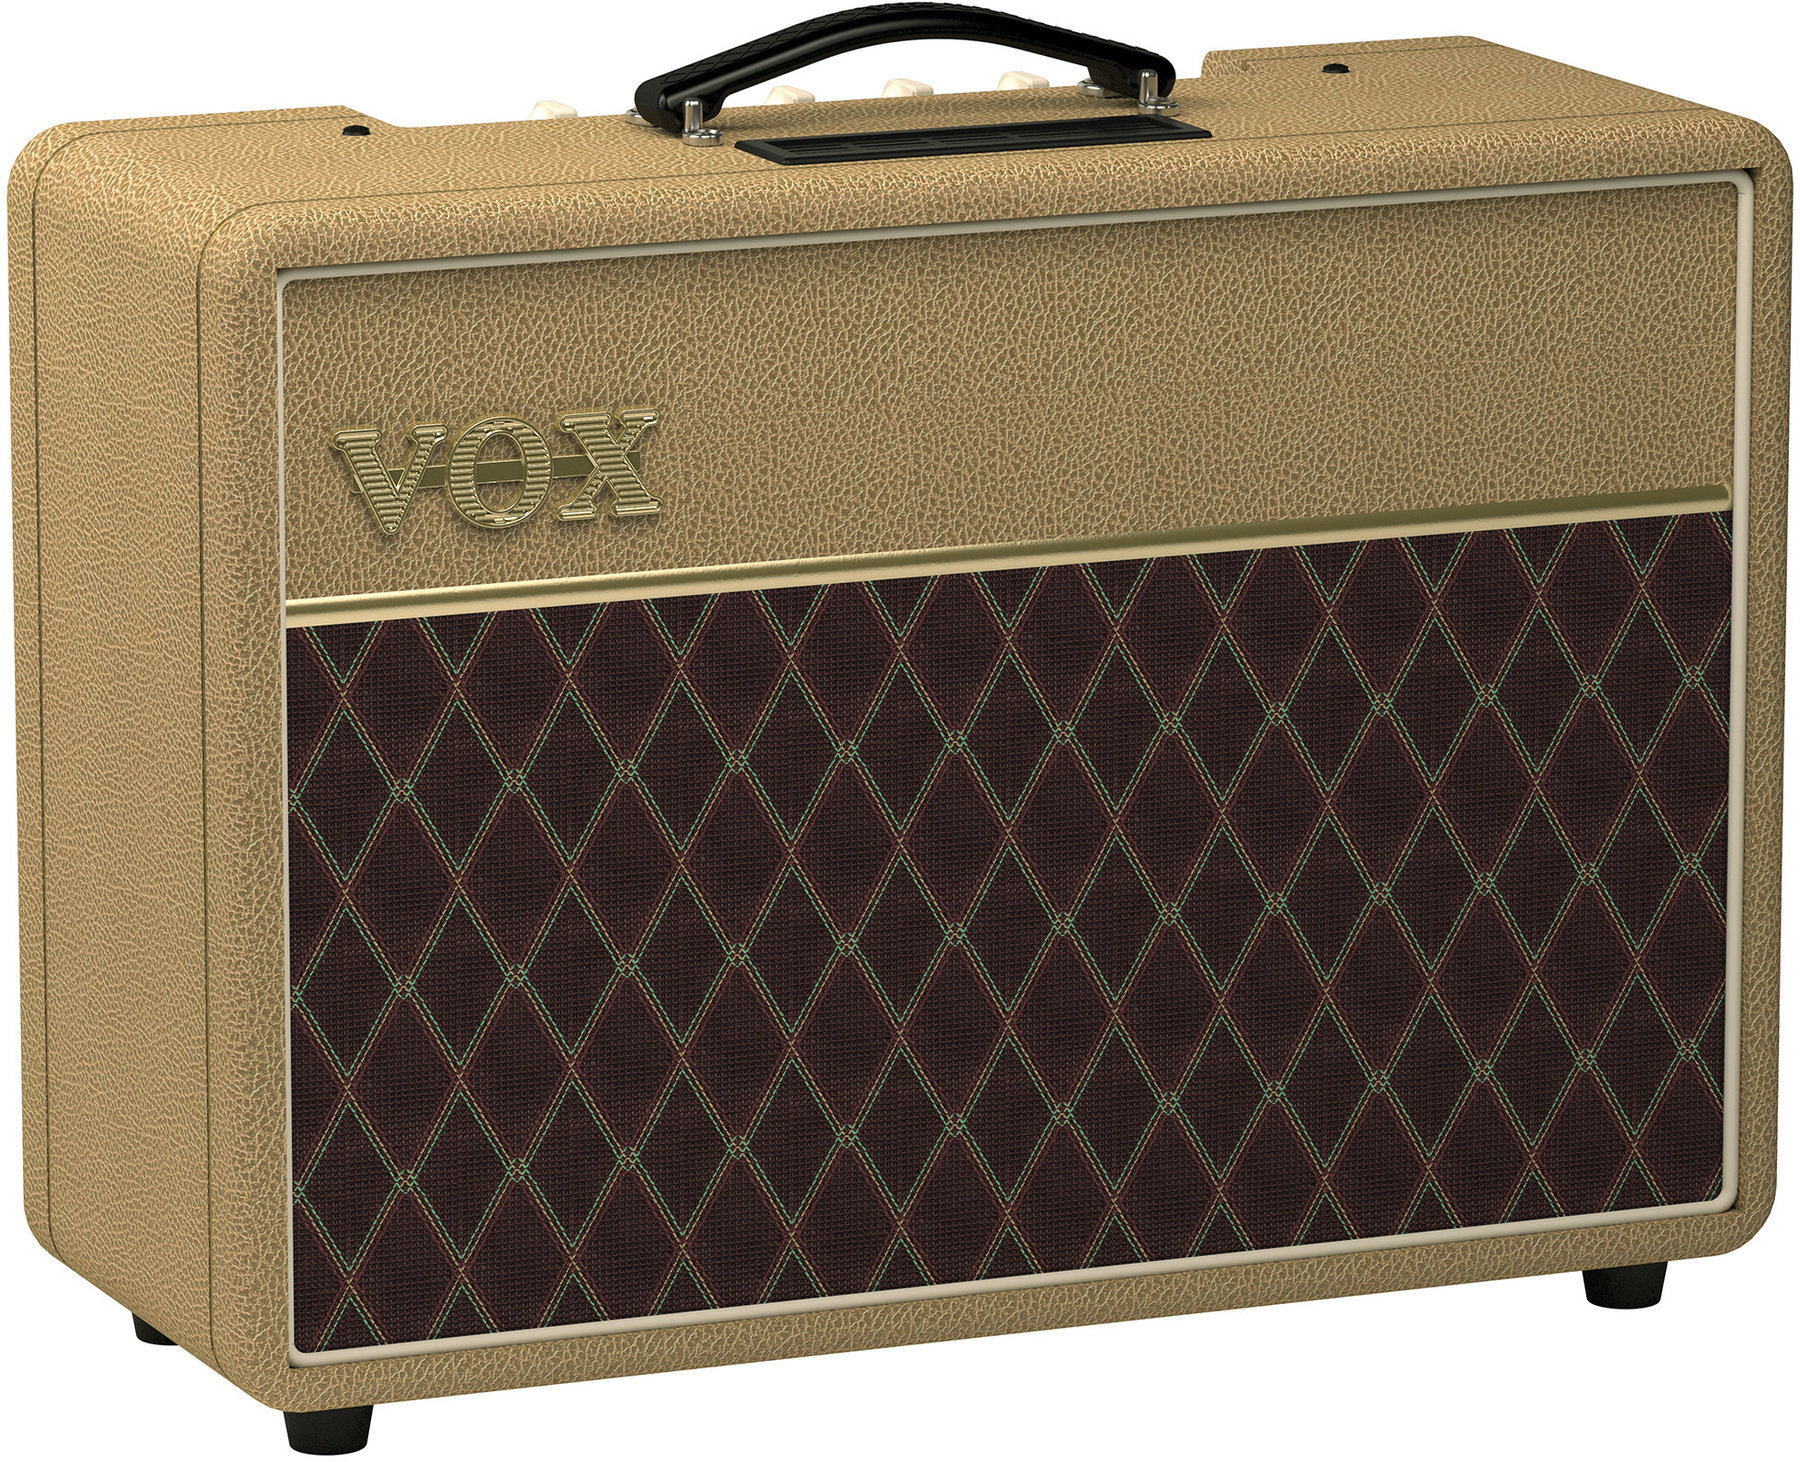 Lampové gitarové kombo Vox AC10C1 Tan Bronco